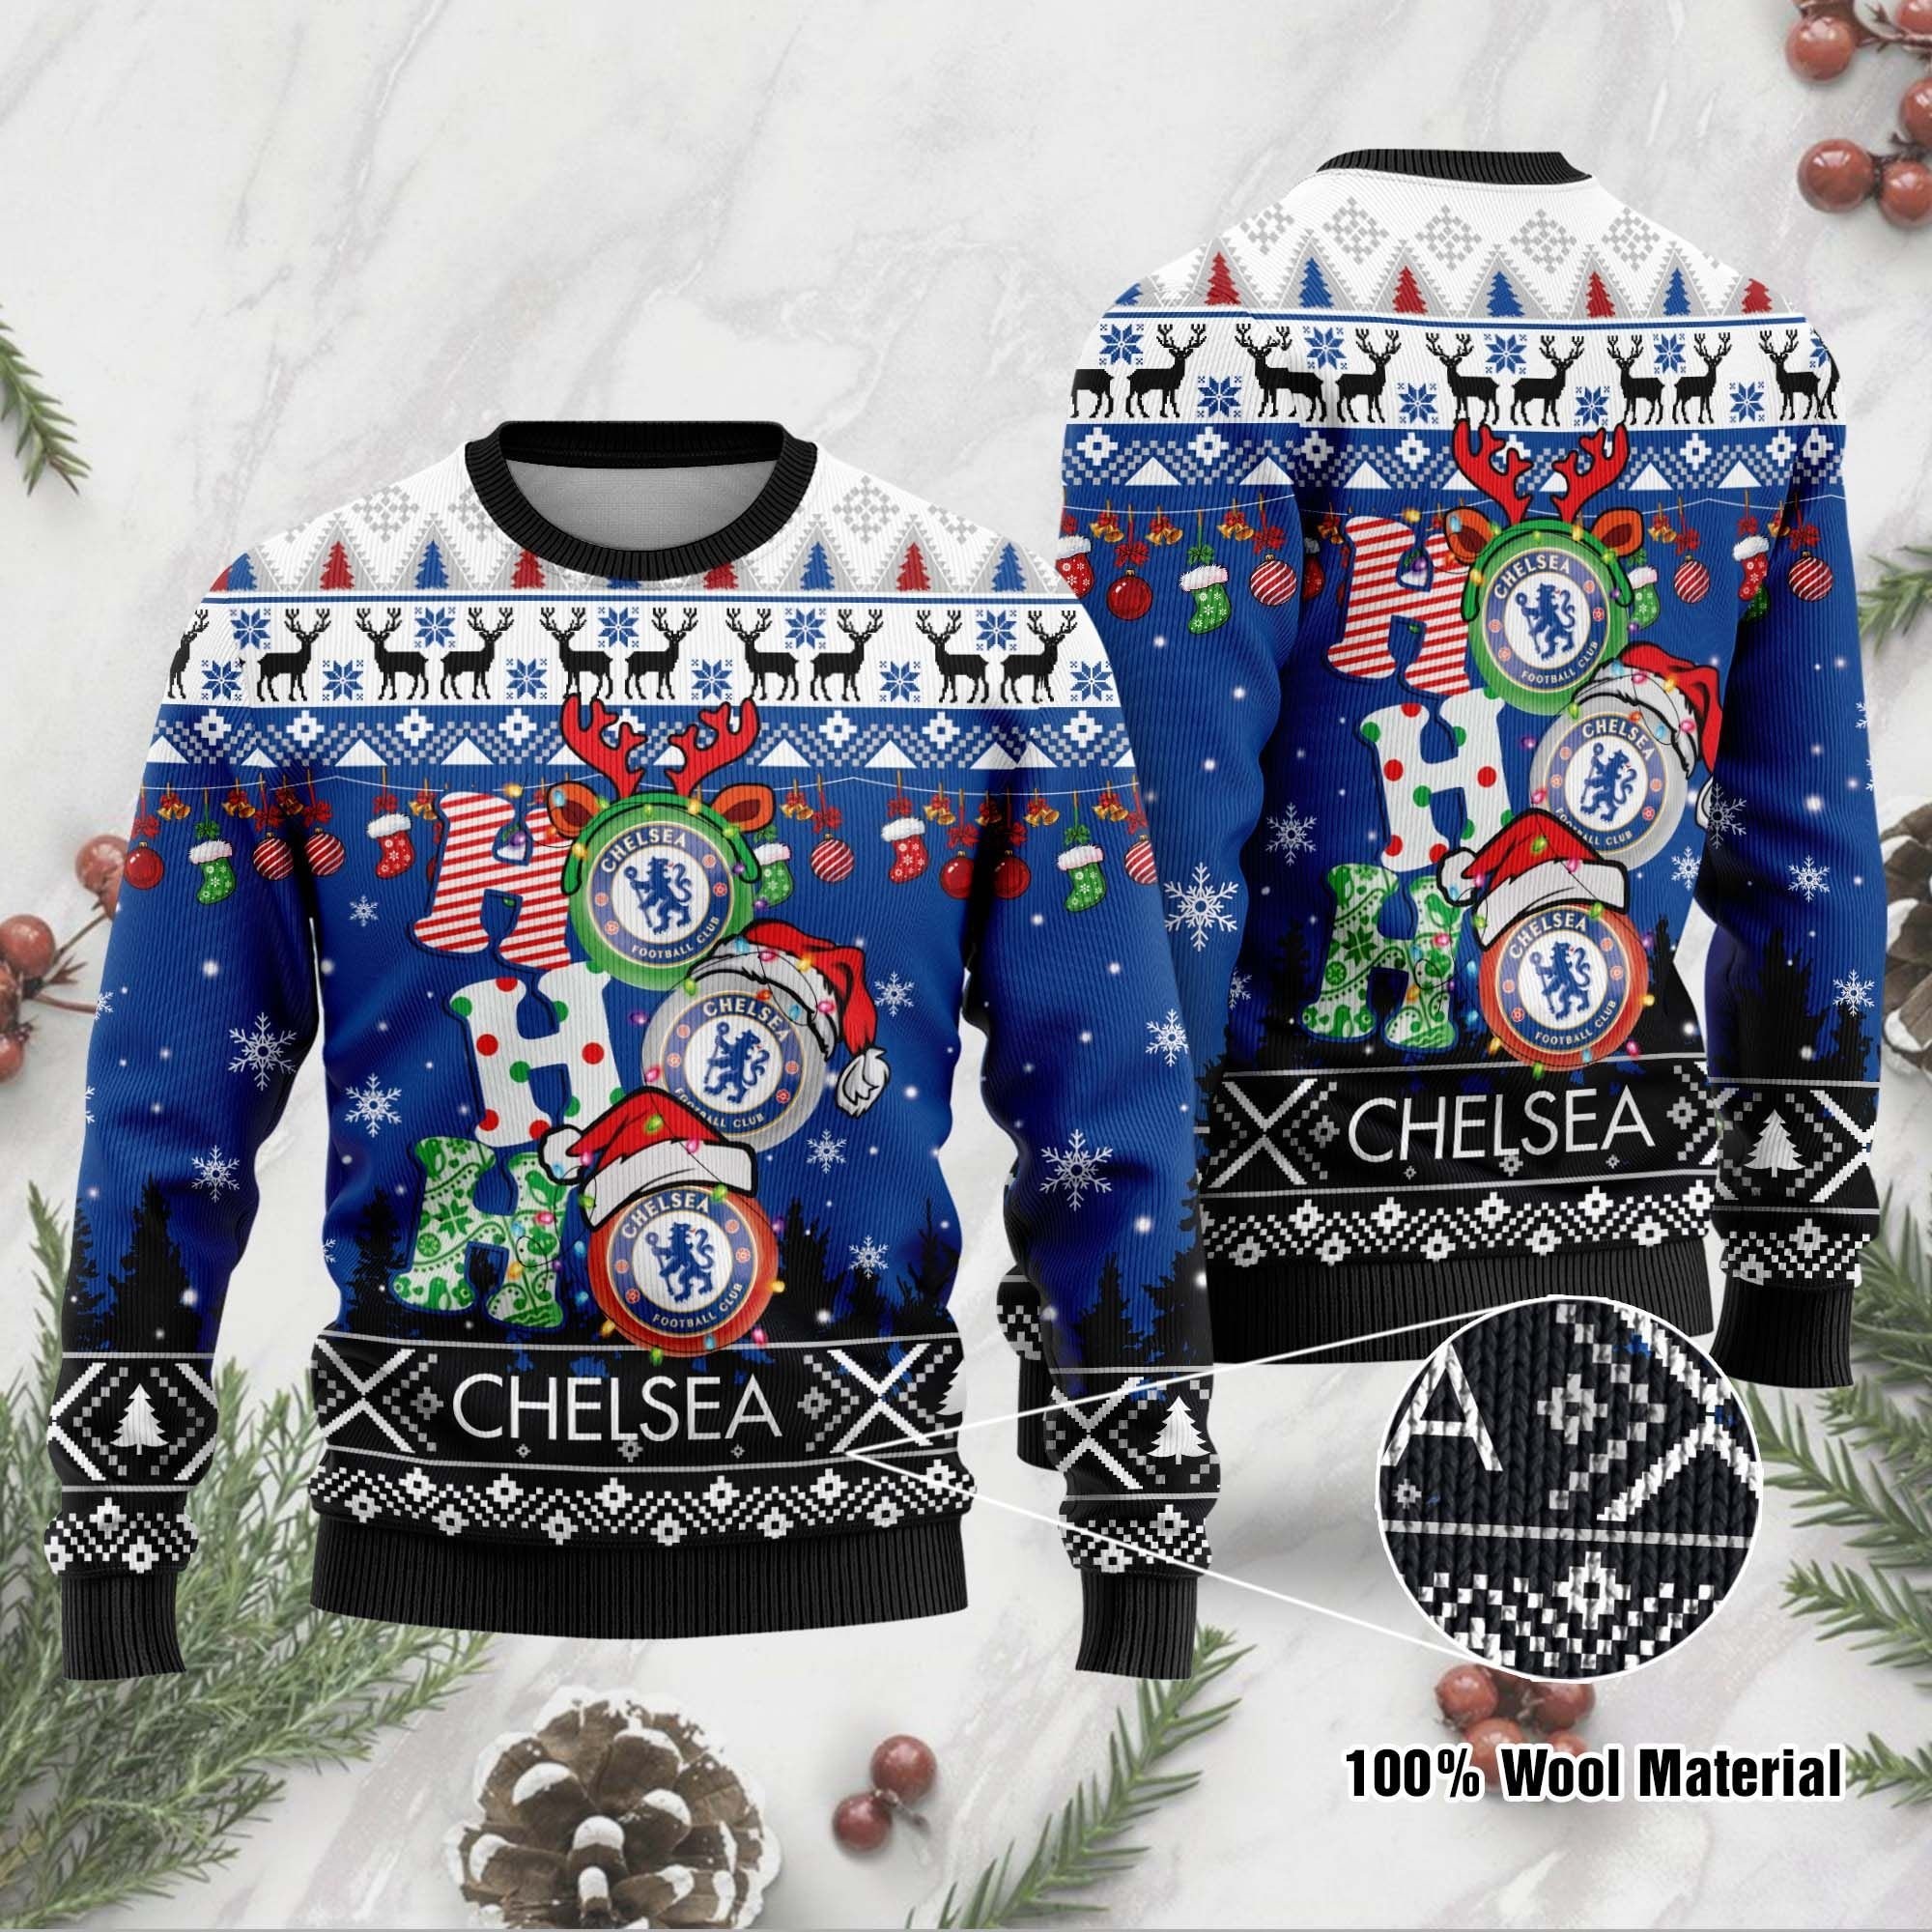 Chelsea FC Ho Ho Ho ugly christmas sweater